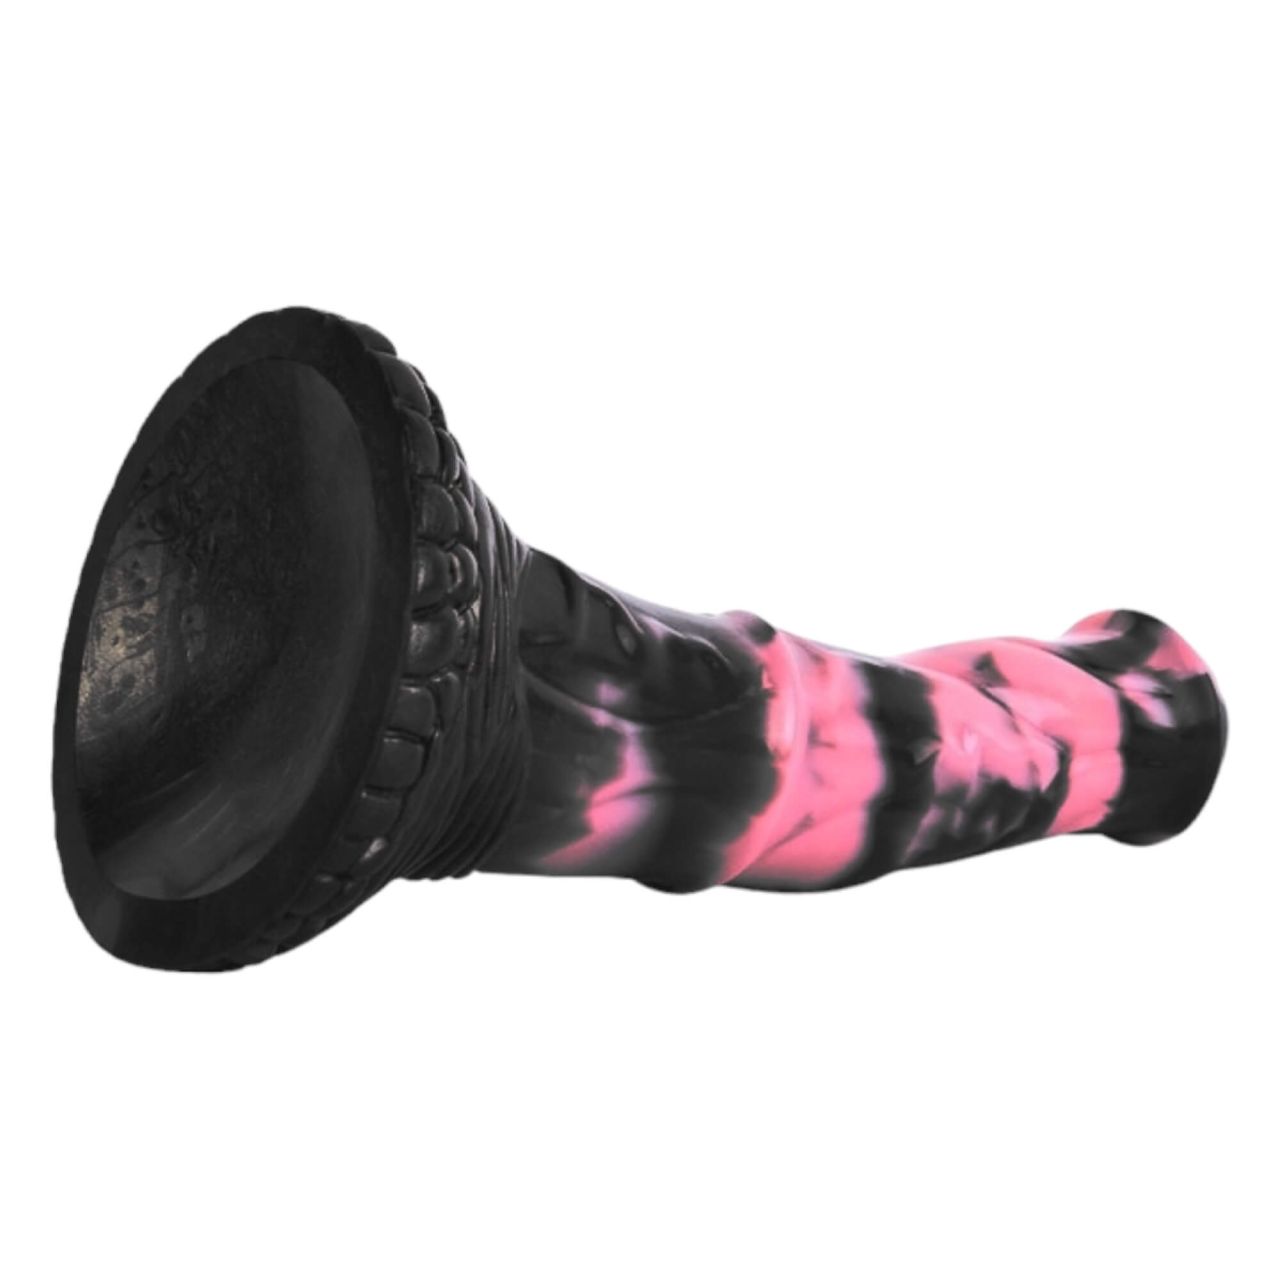 Bad Horse - szilikon lószerszám dildó - 18cm (fekete-pink)